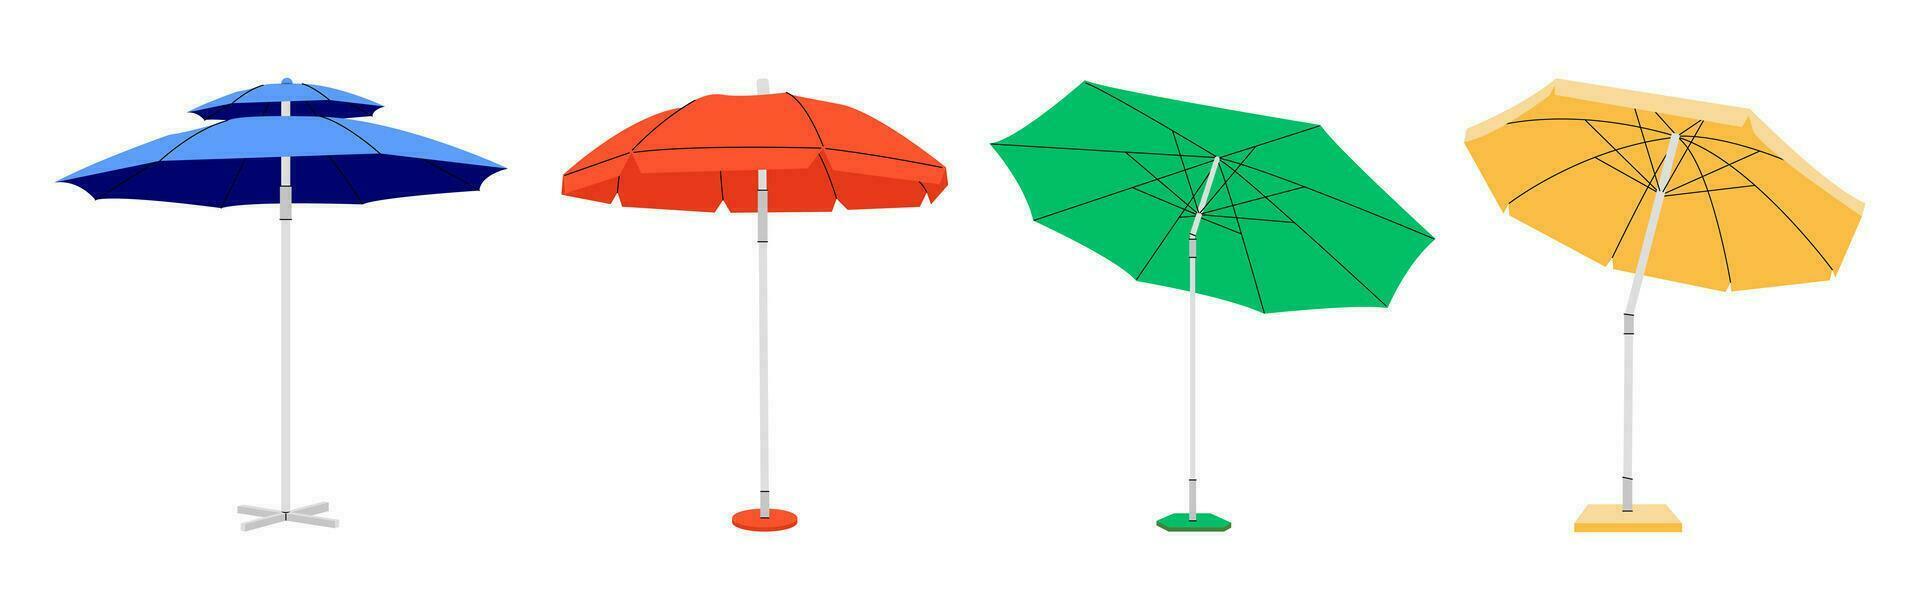 Soleil protecteur Extérieur parapluie pour plage. brillant ensemble de divers plage parapluies. grand parasol pour été vacances ou bord de mer pique-nique. vecteur plat style dessin animé illustration, tout éléments sont isolé